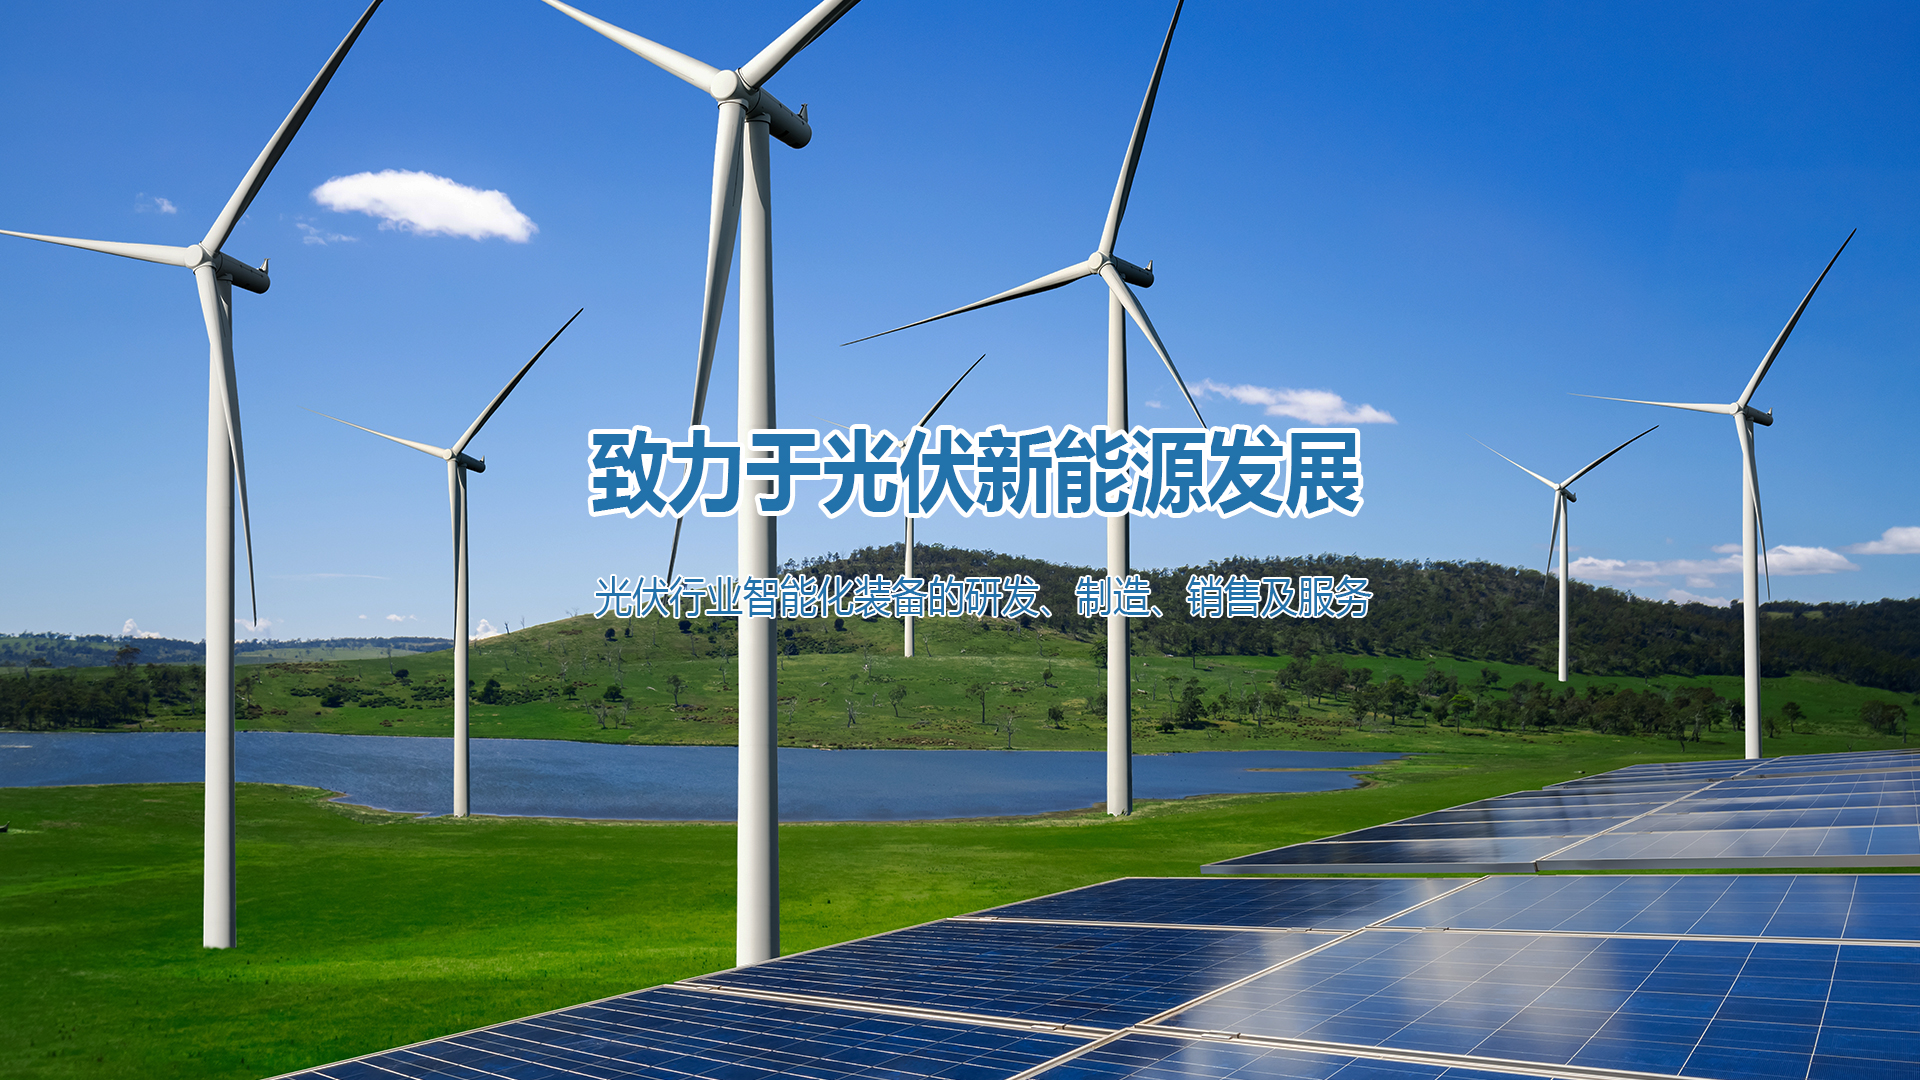 光伏新能源 - 翰维创能清洁能源综合赋能平台